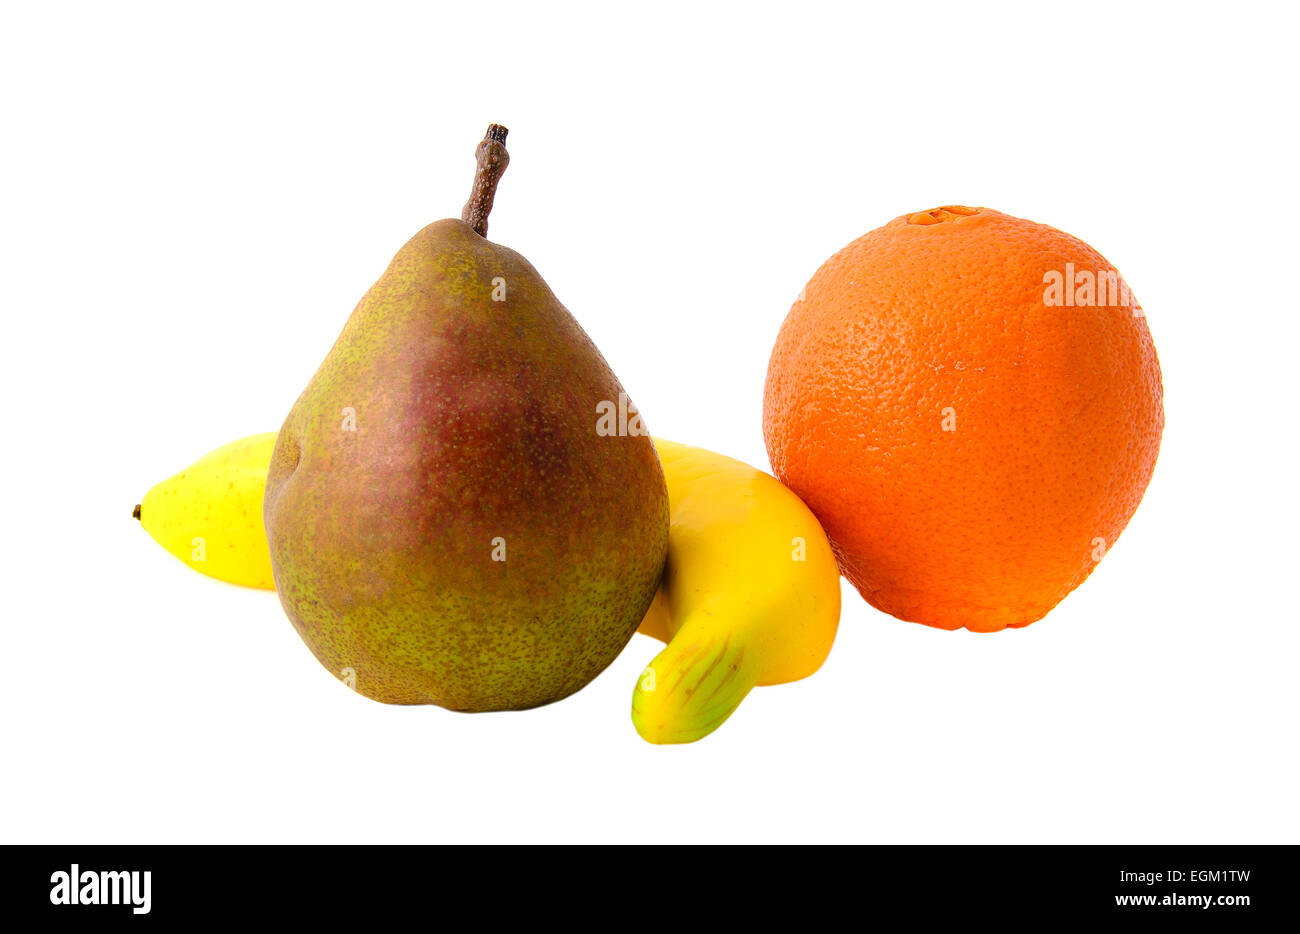 Fresh Fruits: Pear, Banana and Orange. Isolatet Stock Photo